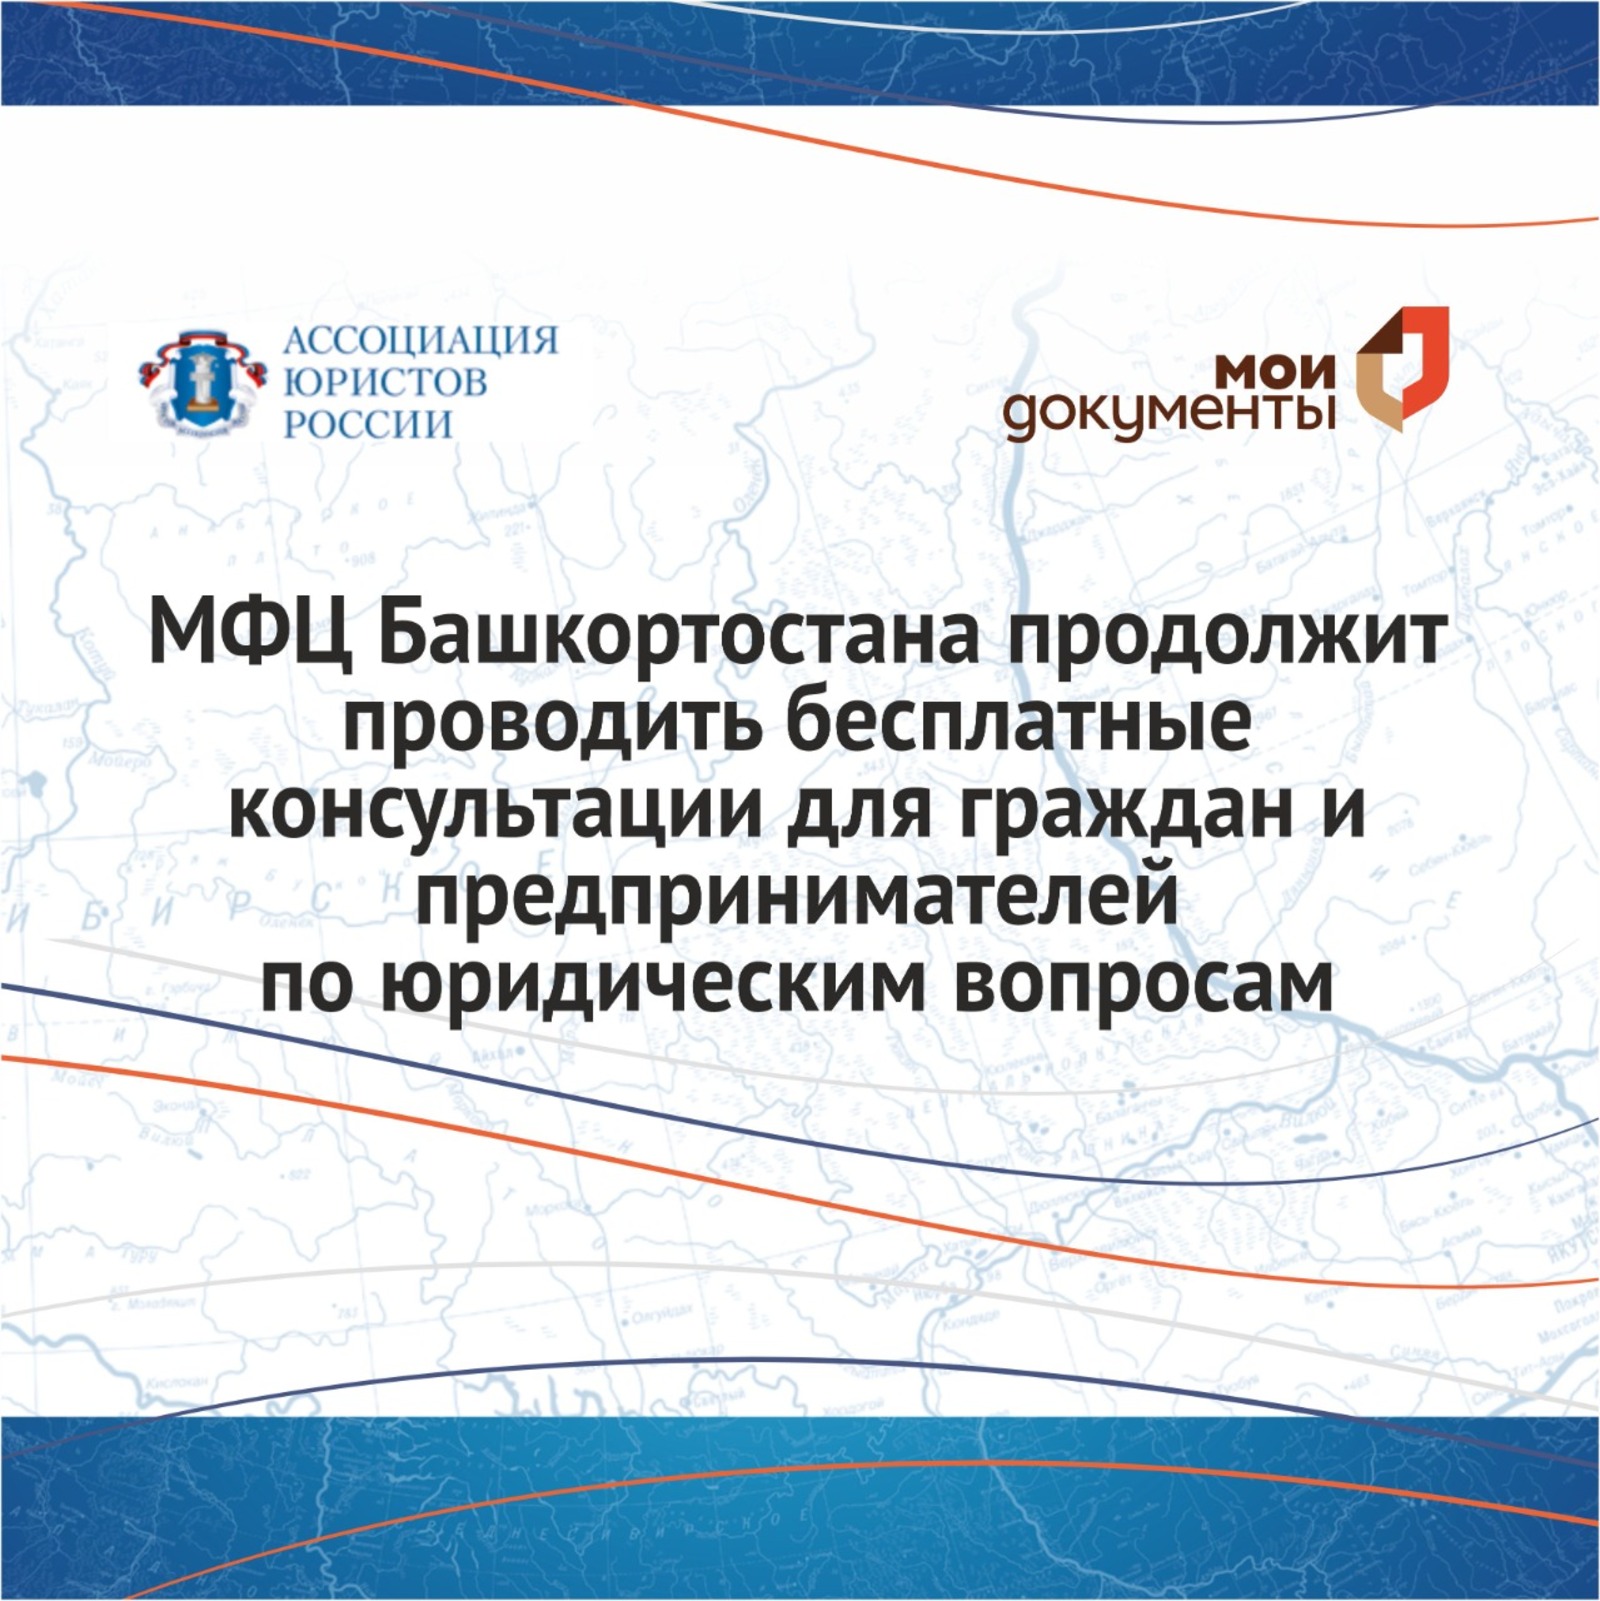 МФЦ Башкортостана продолжает проводить бесплатные консультации по юридическим вопросам